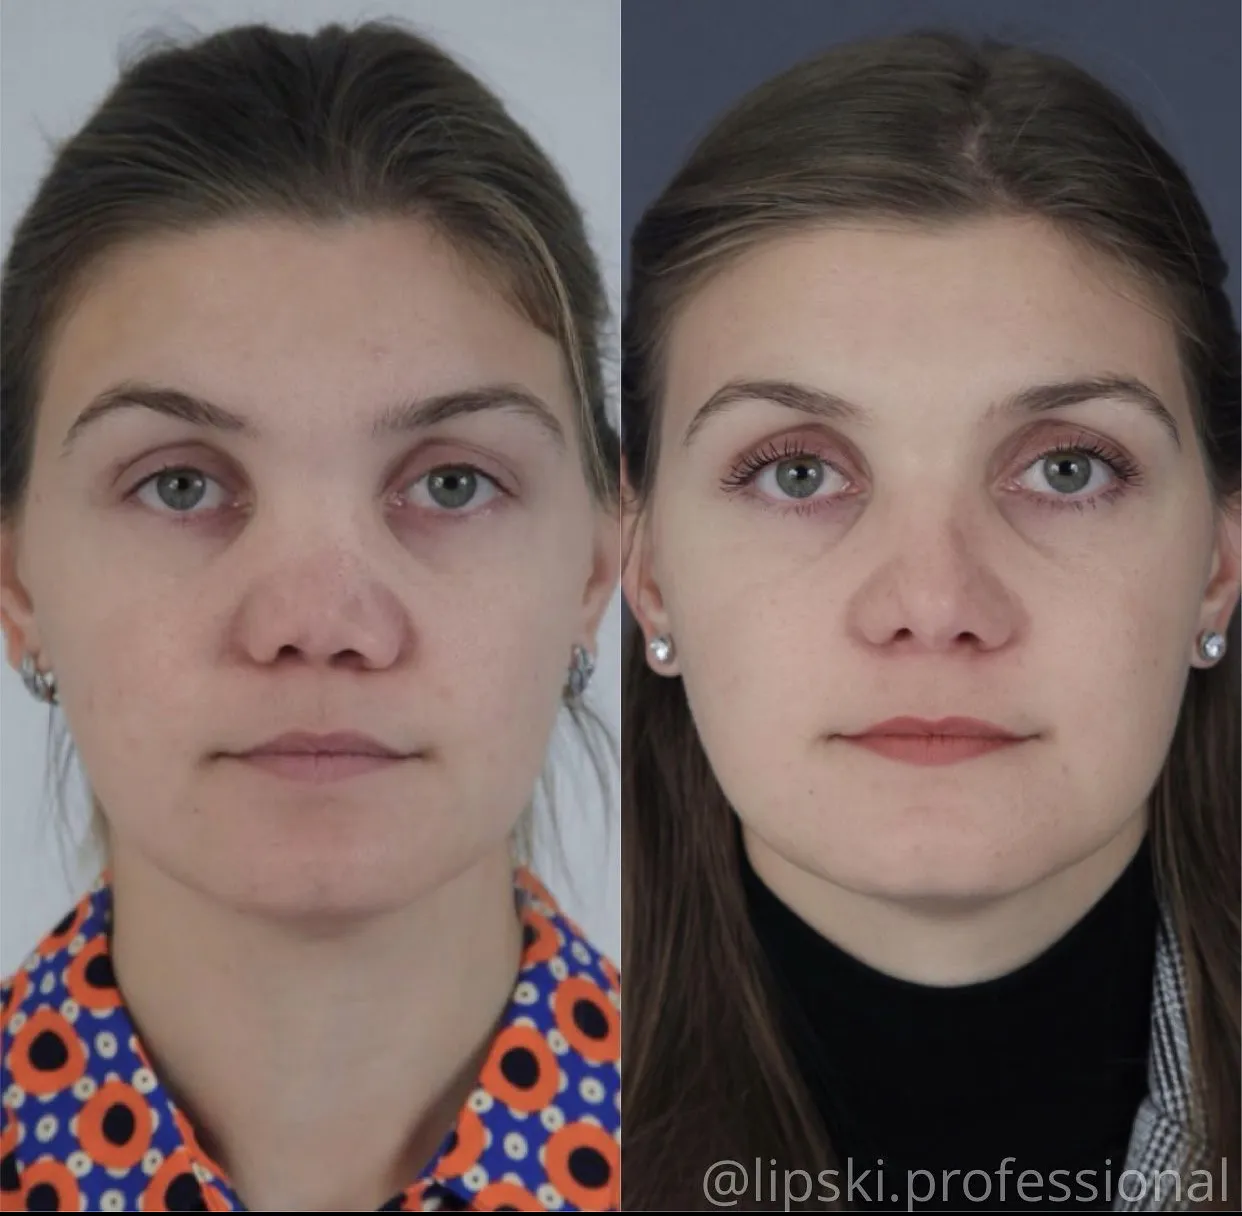 Ринопластика курносого носа до и после фото